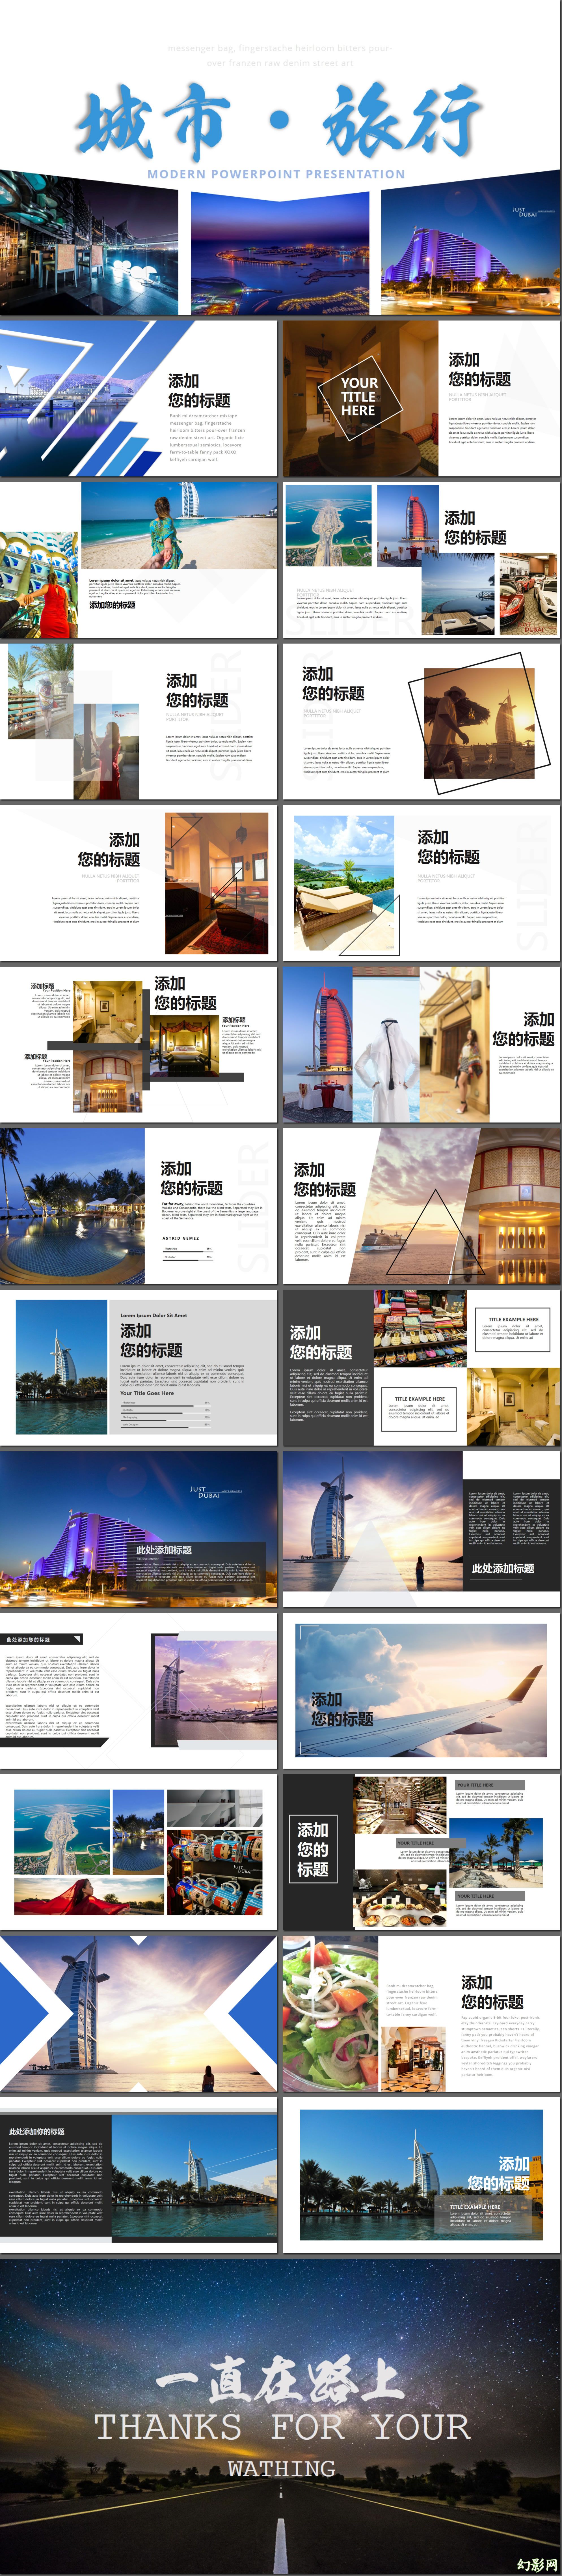 城市旅行图片展示旅游相册企业宣传旅游日记附赠99页图表